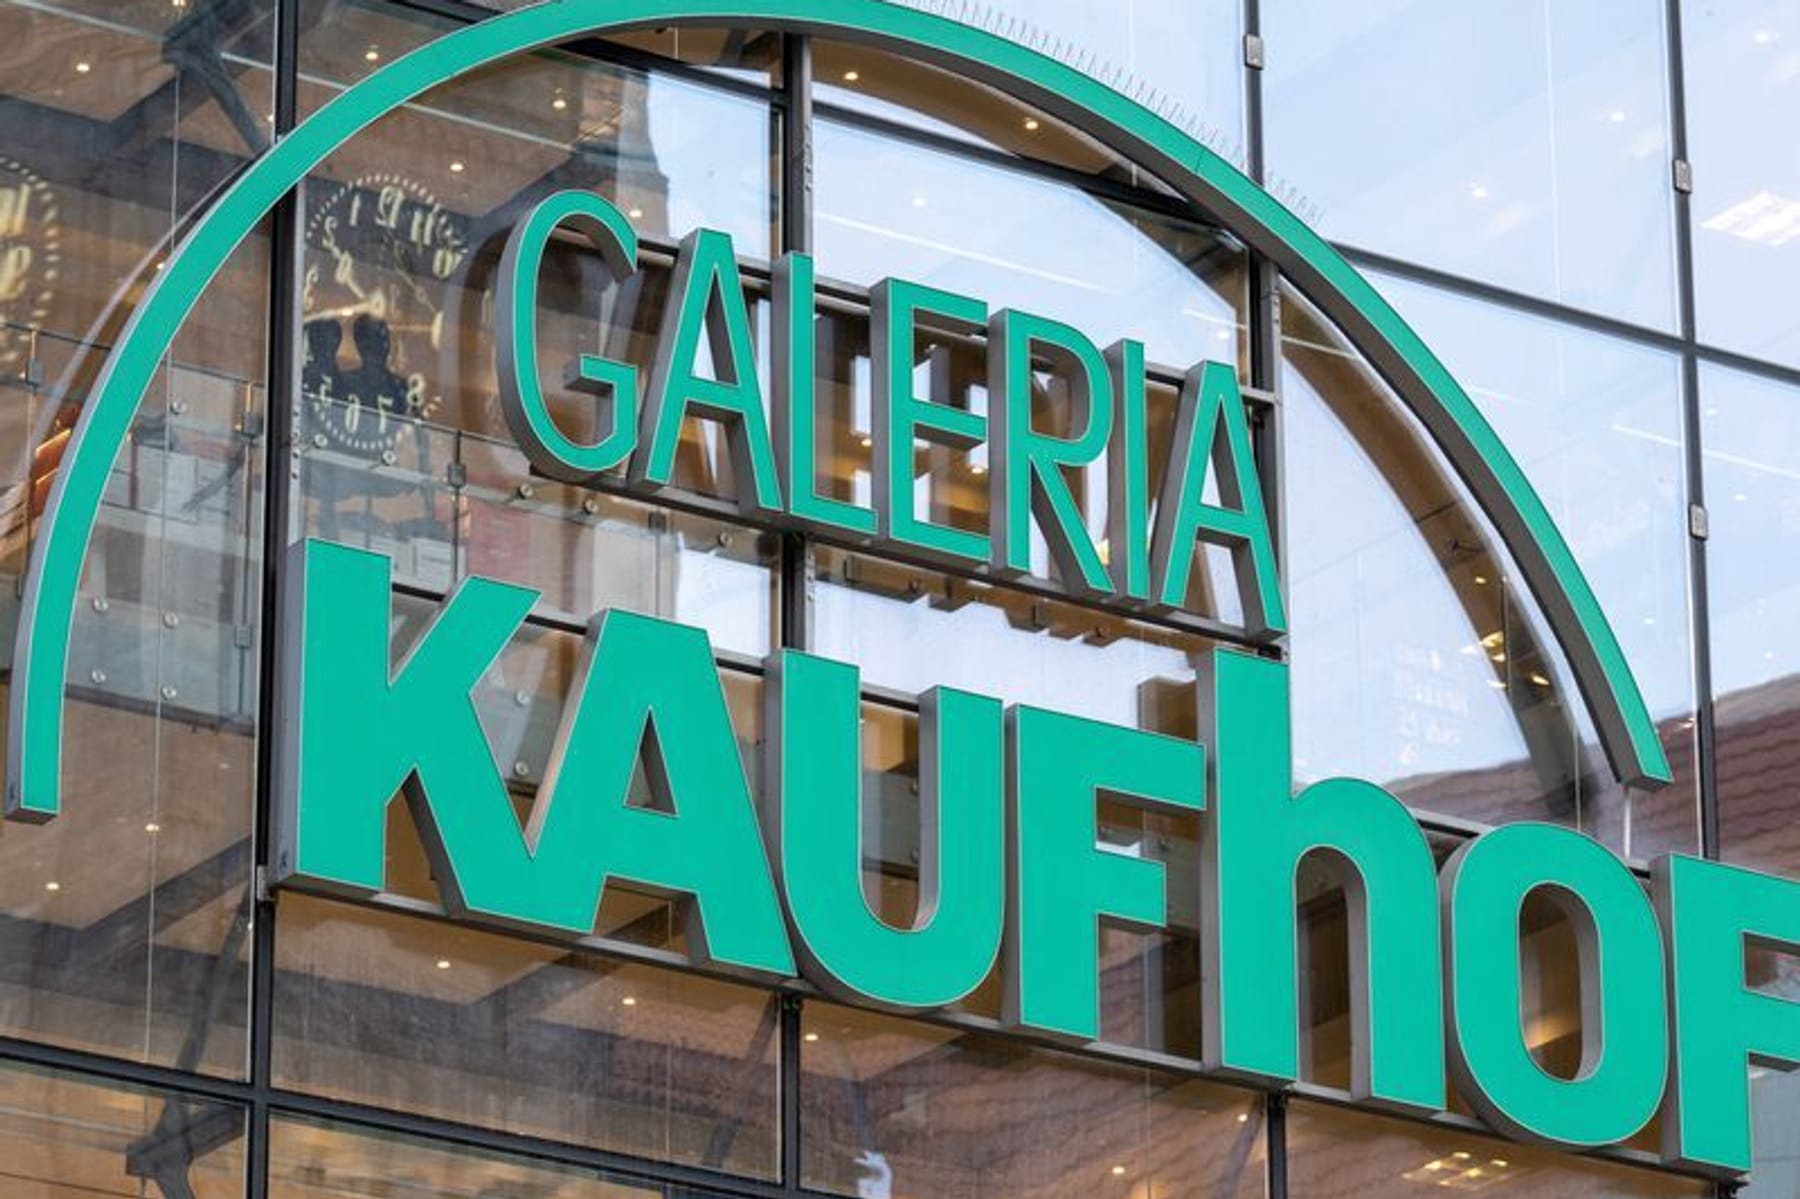 Galeria Karstadt Kaufhof: Wer sind mögliche Kauf-Interessenten?